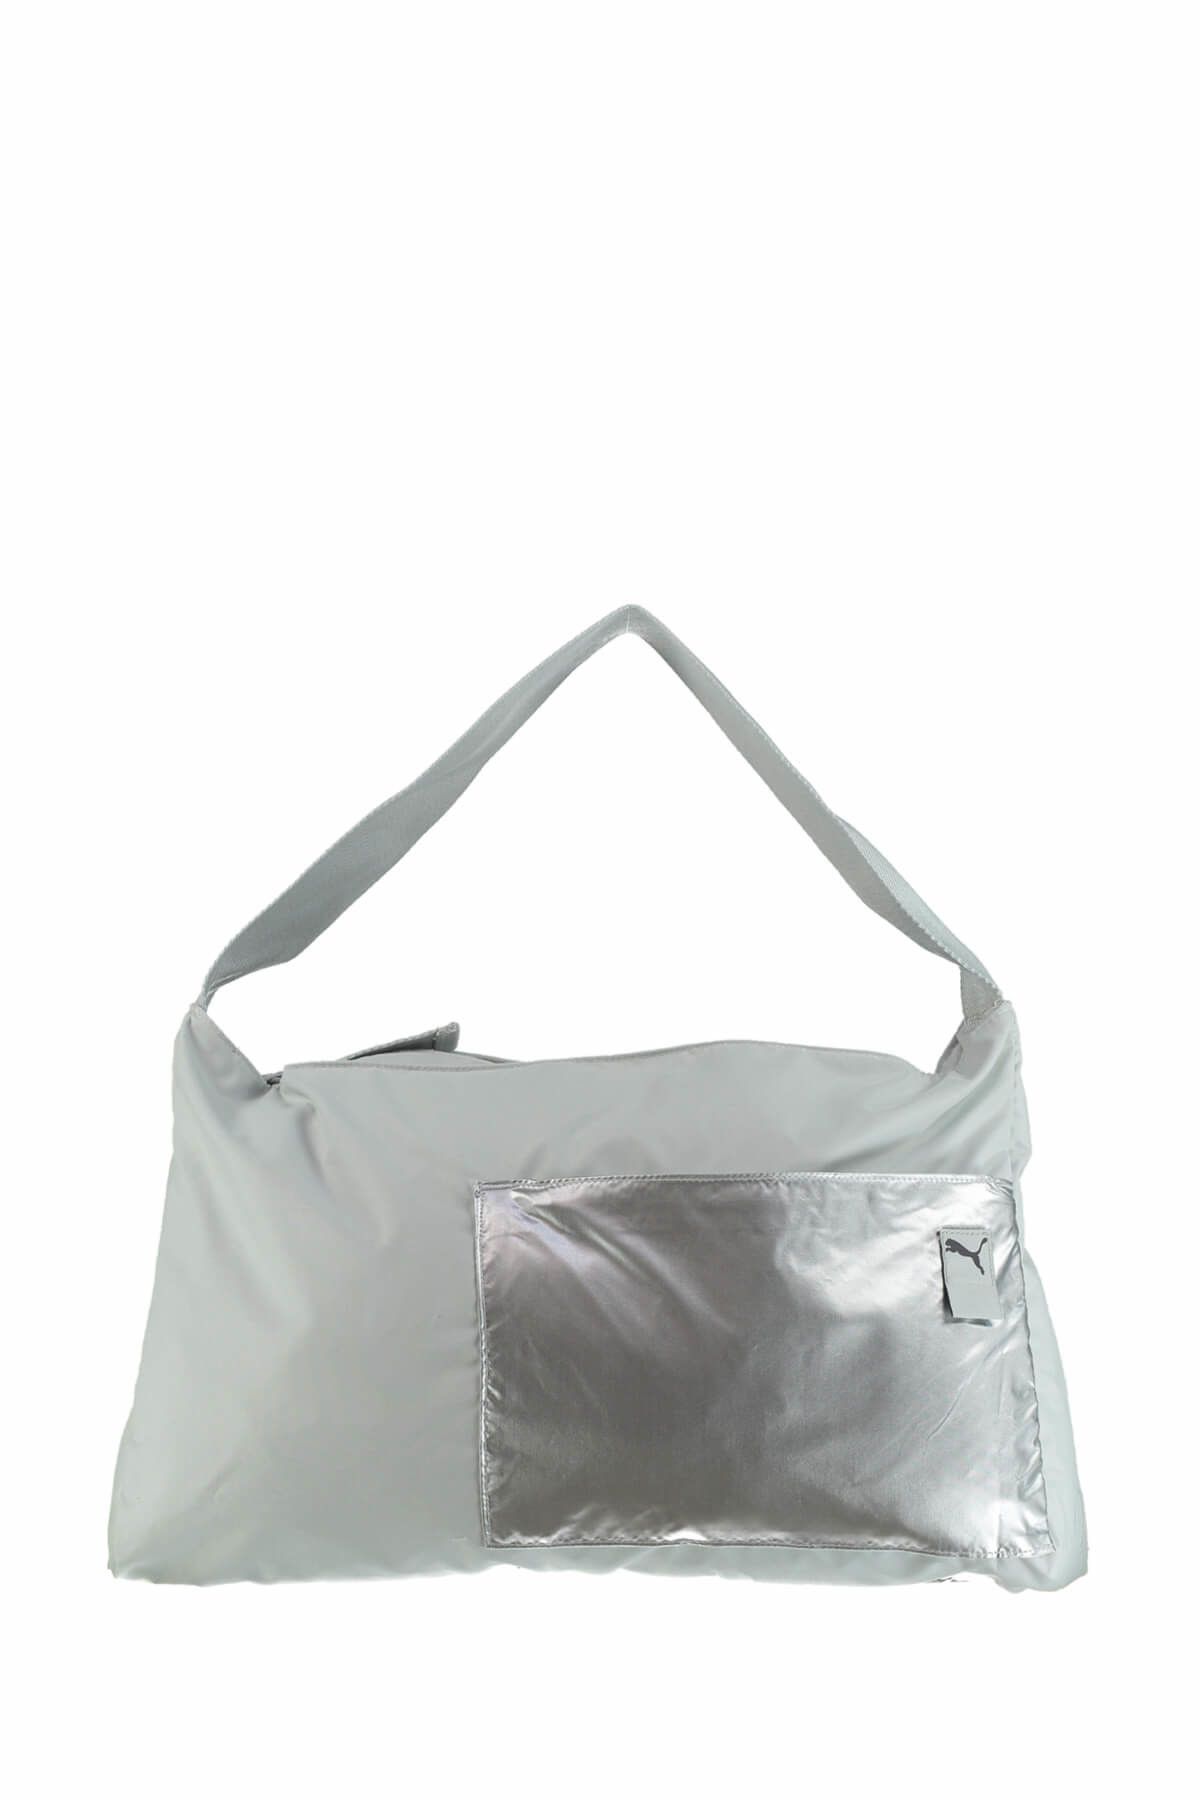 Puma Kadın Çanta - Dancer Barrel Bag - 7505403